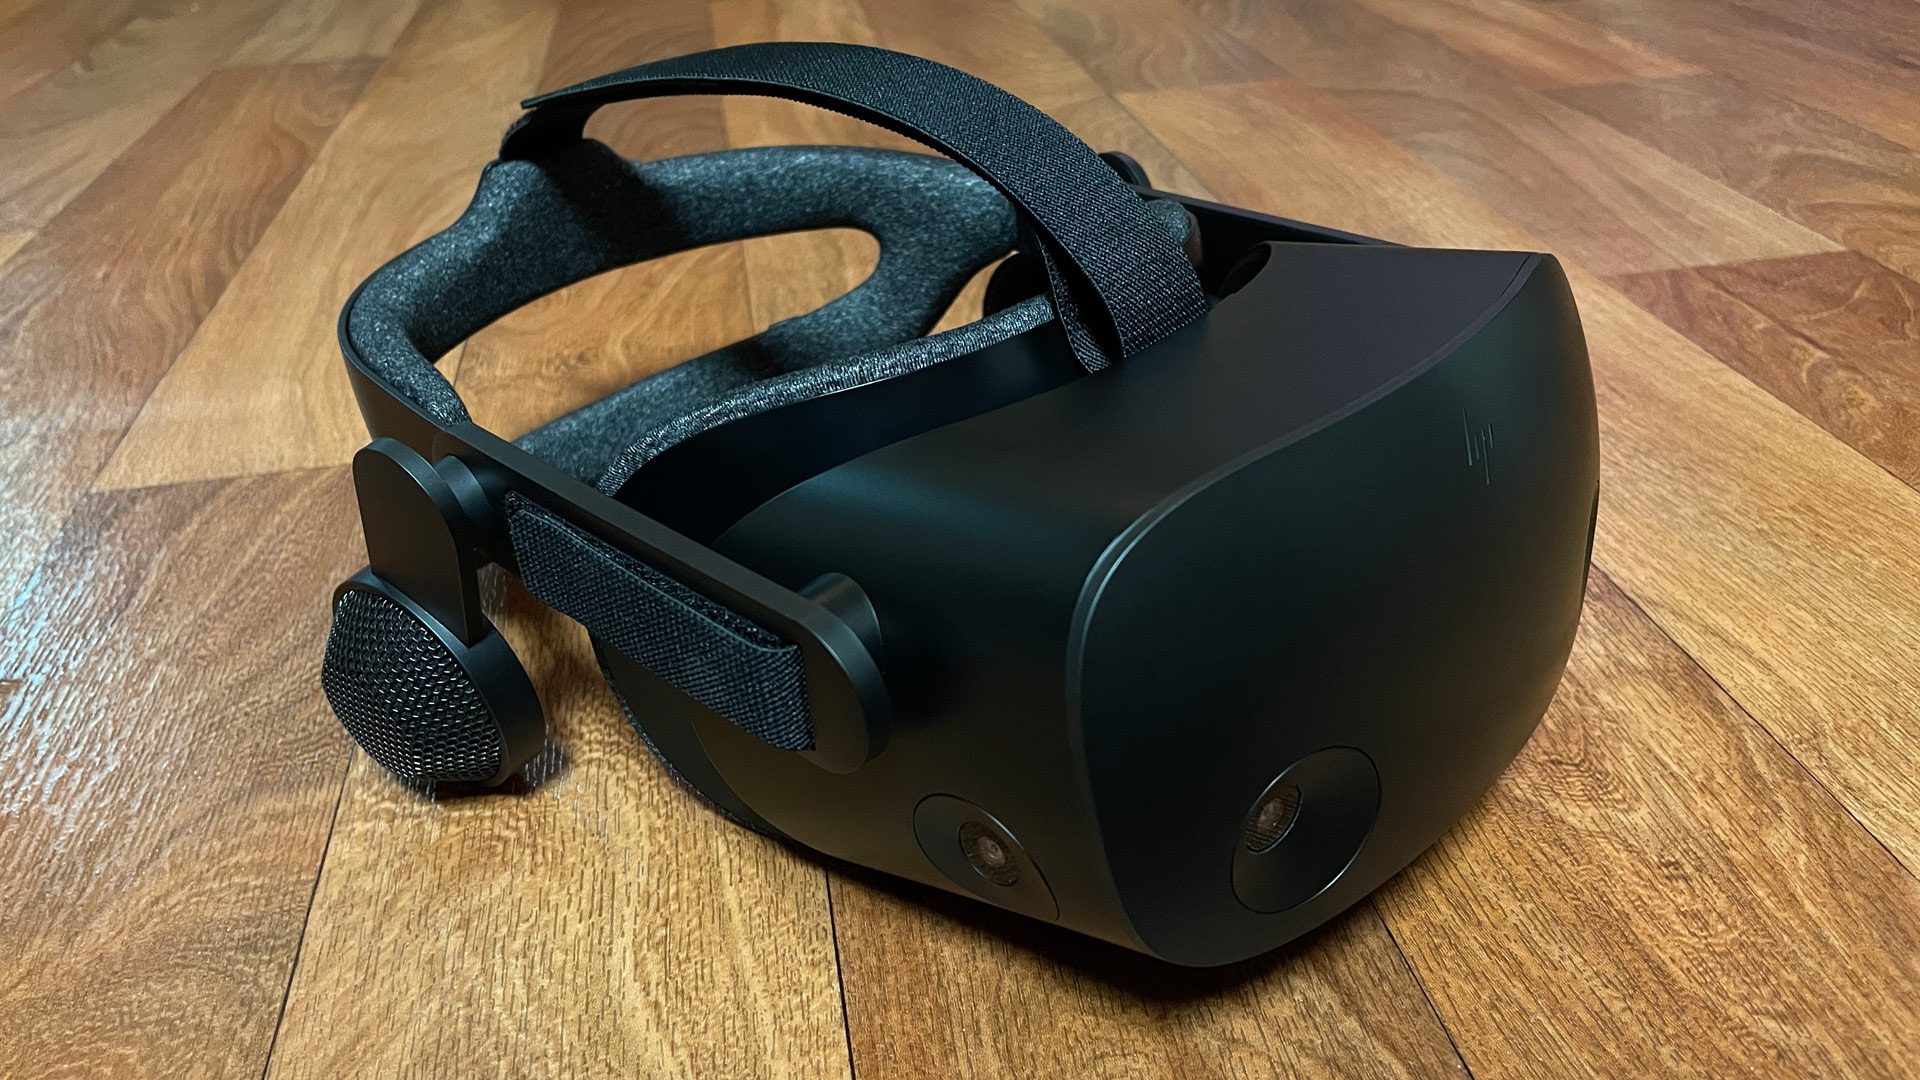 Reverb G2 VR Headset Tweaks Make a Solid Even Better